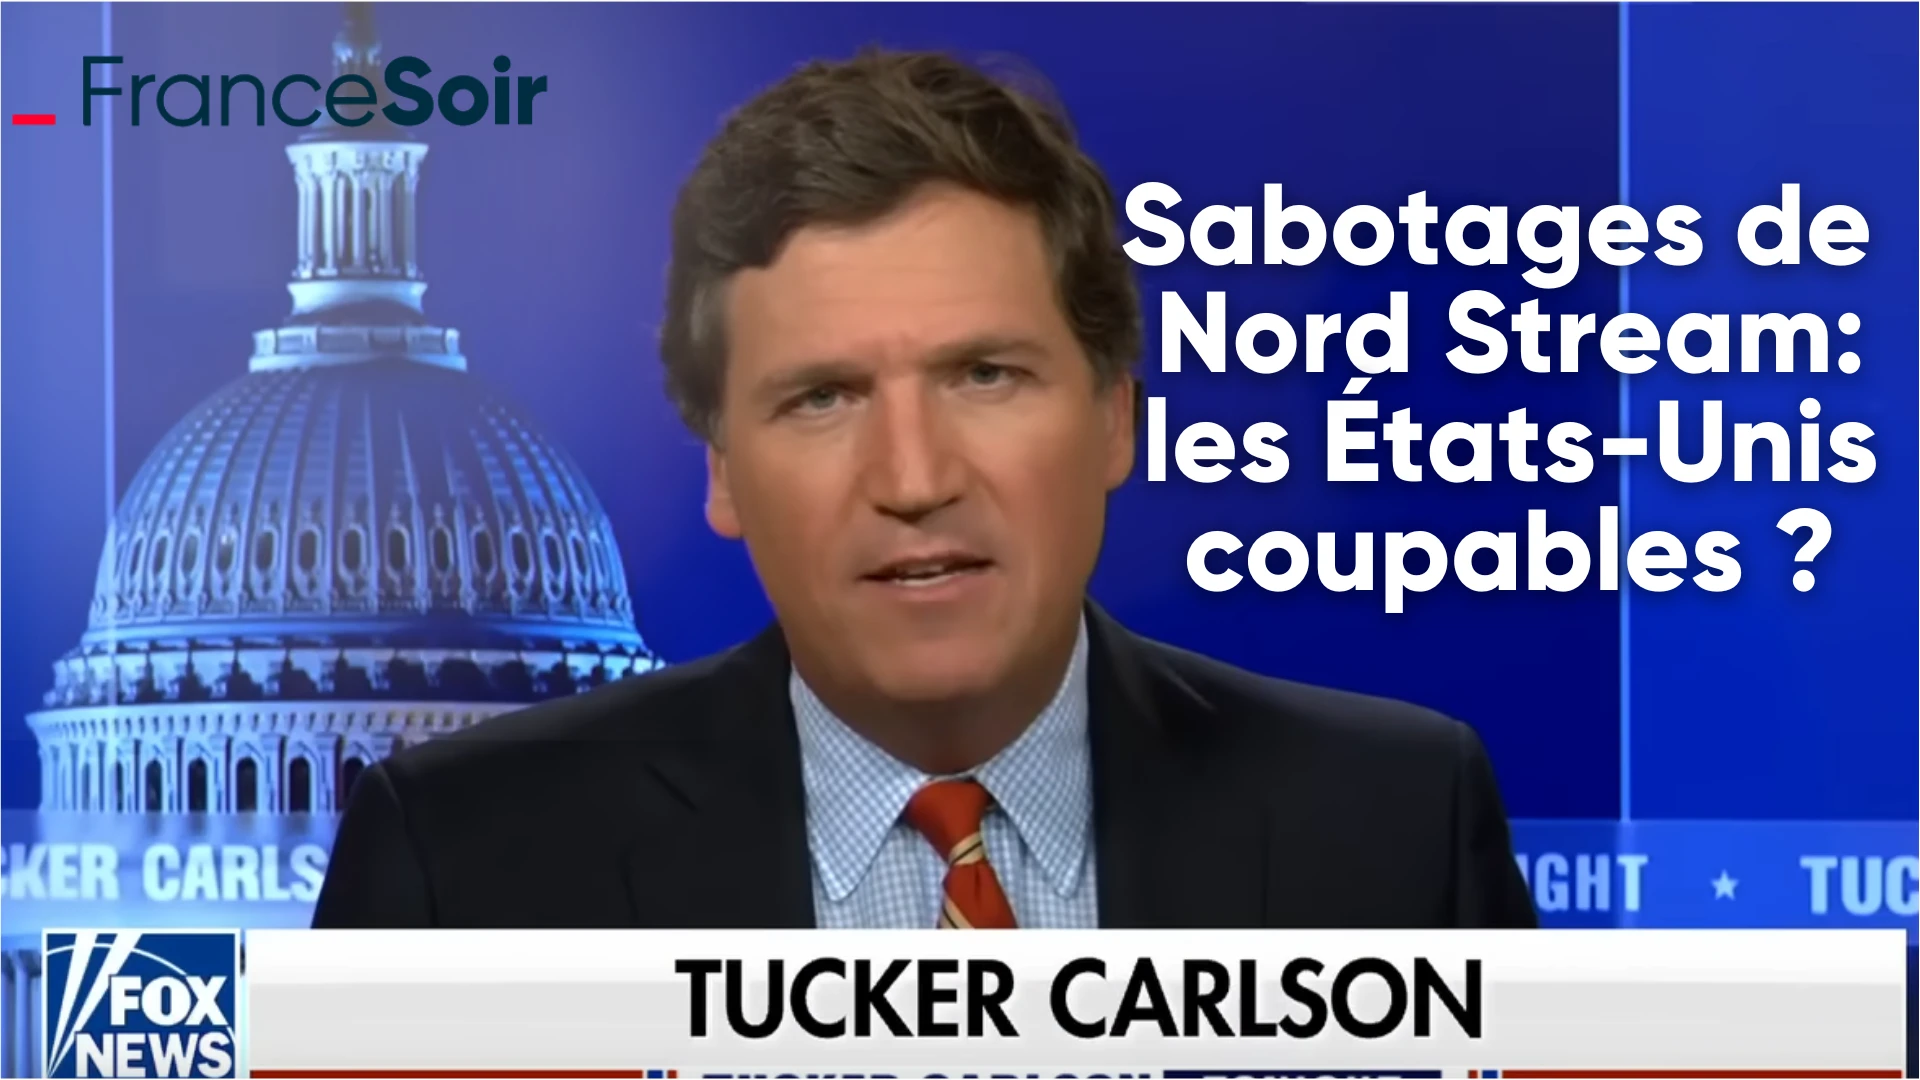 Sabotages de Nord Stream: pour le journaliste de Fox News Tucker Carlson, les États-Unis possiblement coupables